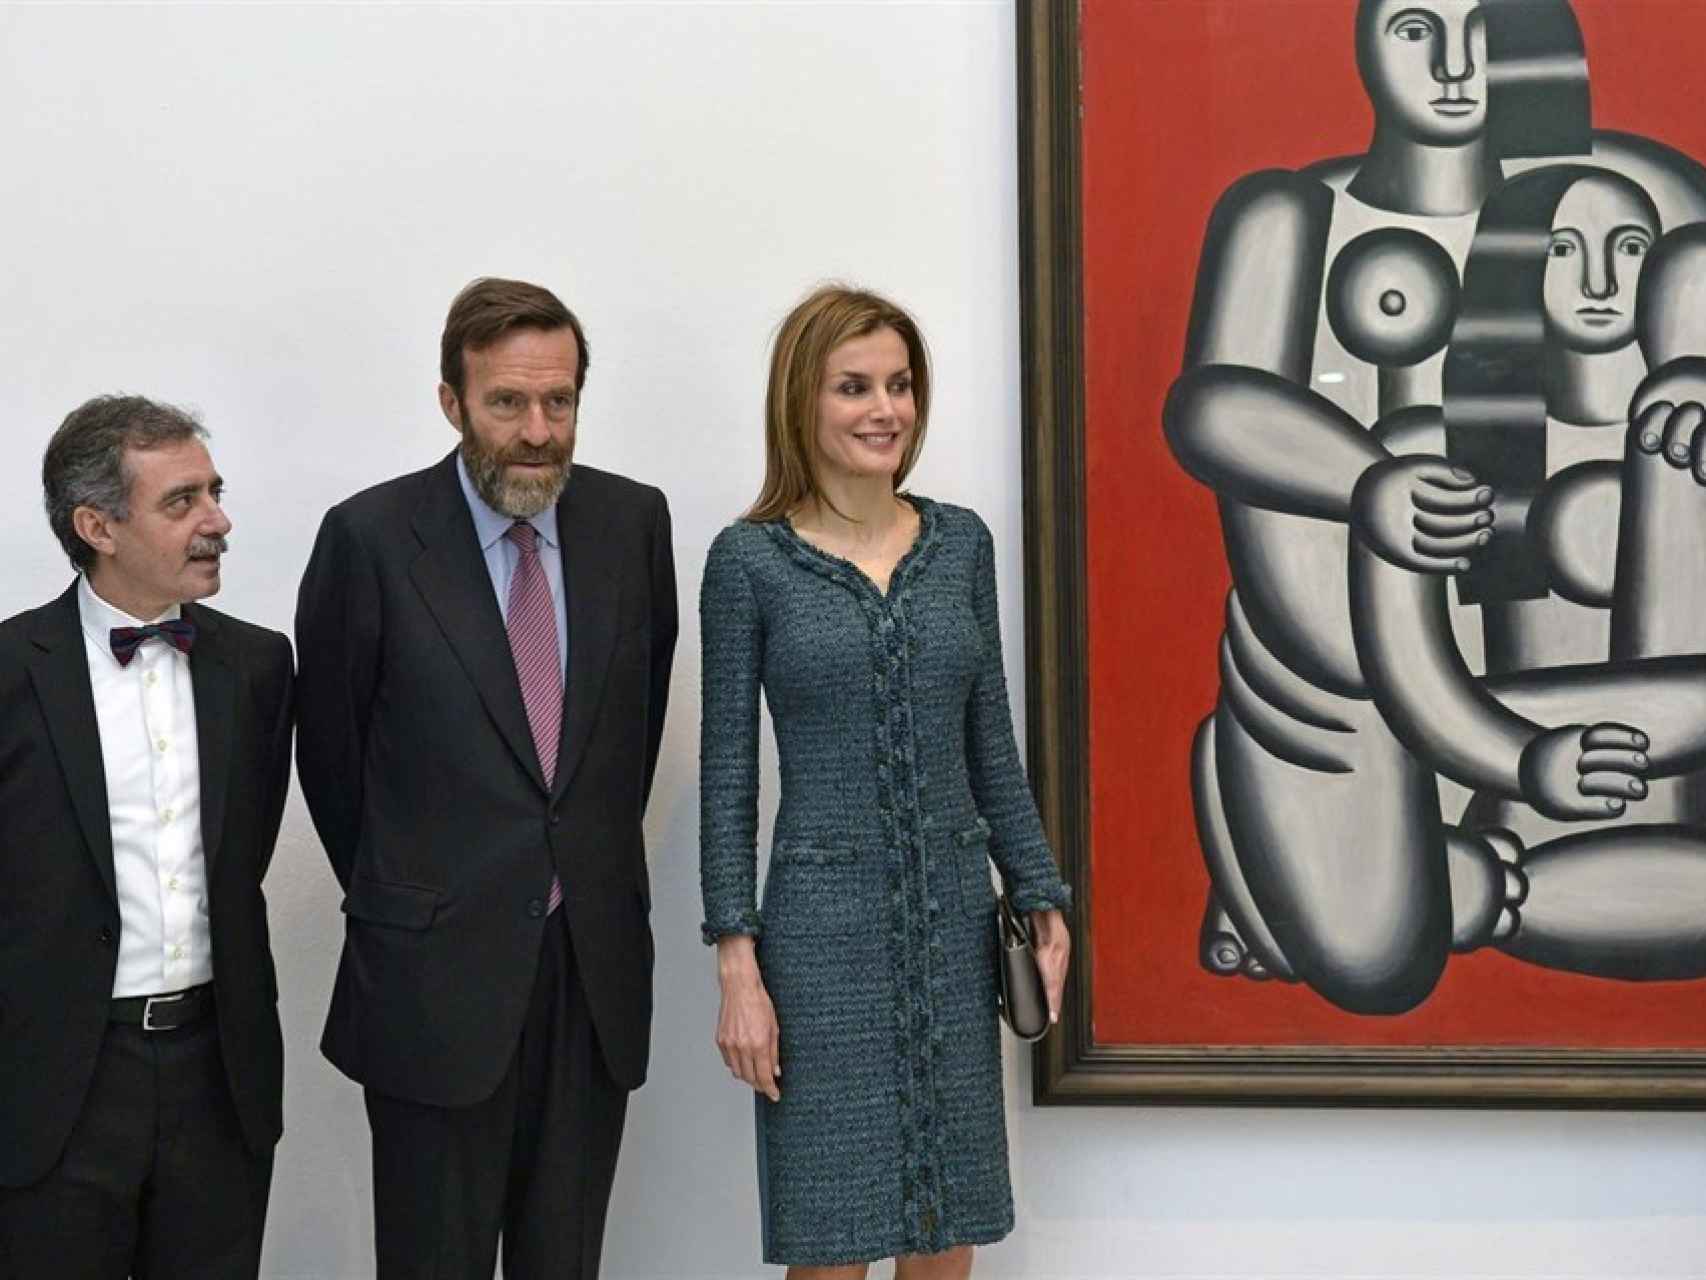 La Reina durante la inauguración de una exposición en el museo Reina Sofía el 18 de marzo de 2015